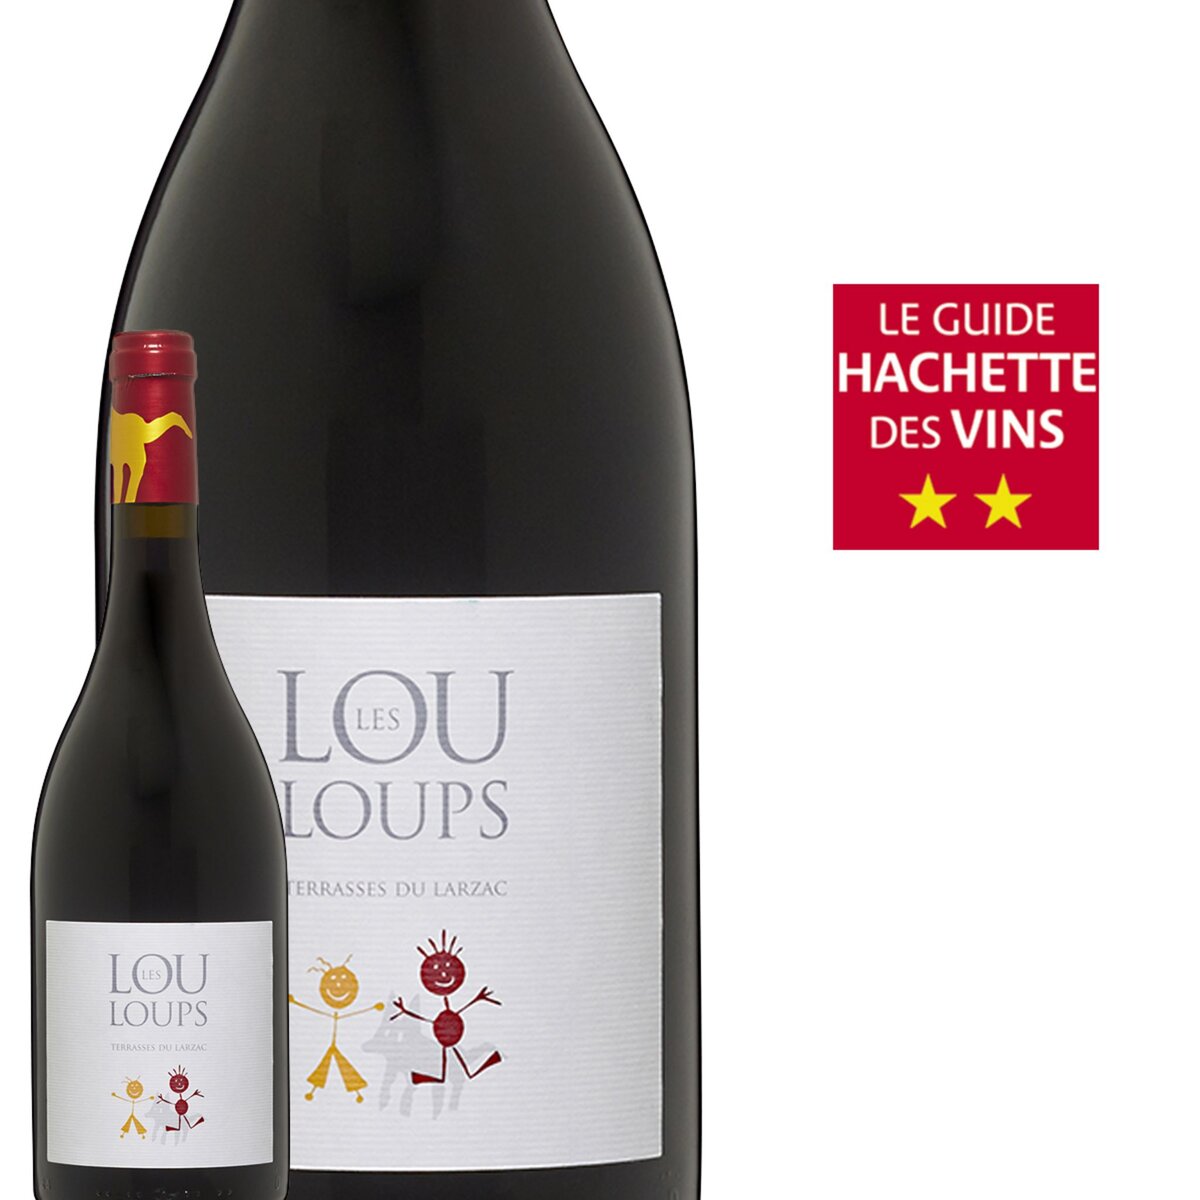 Les Louloups Le Clos du Lucquier Terrasses du Larzac Rouge 2014